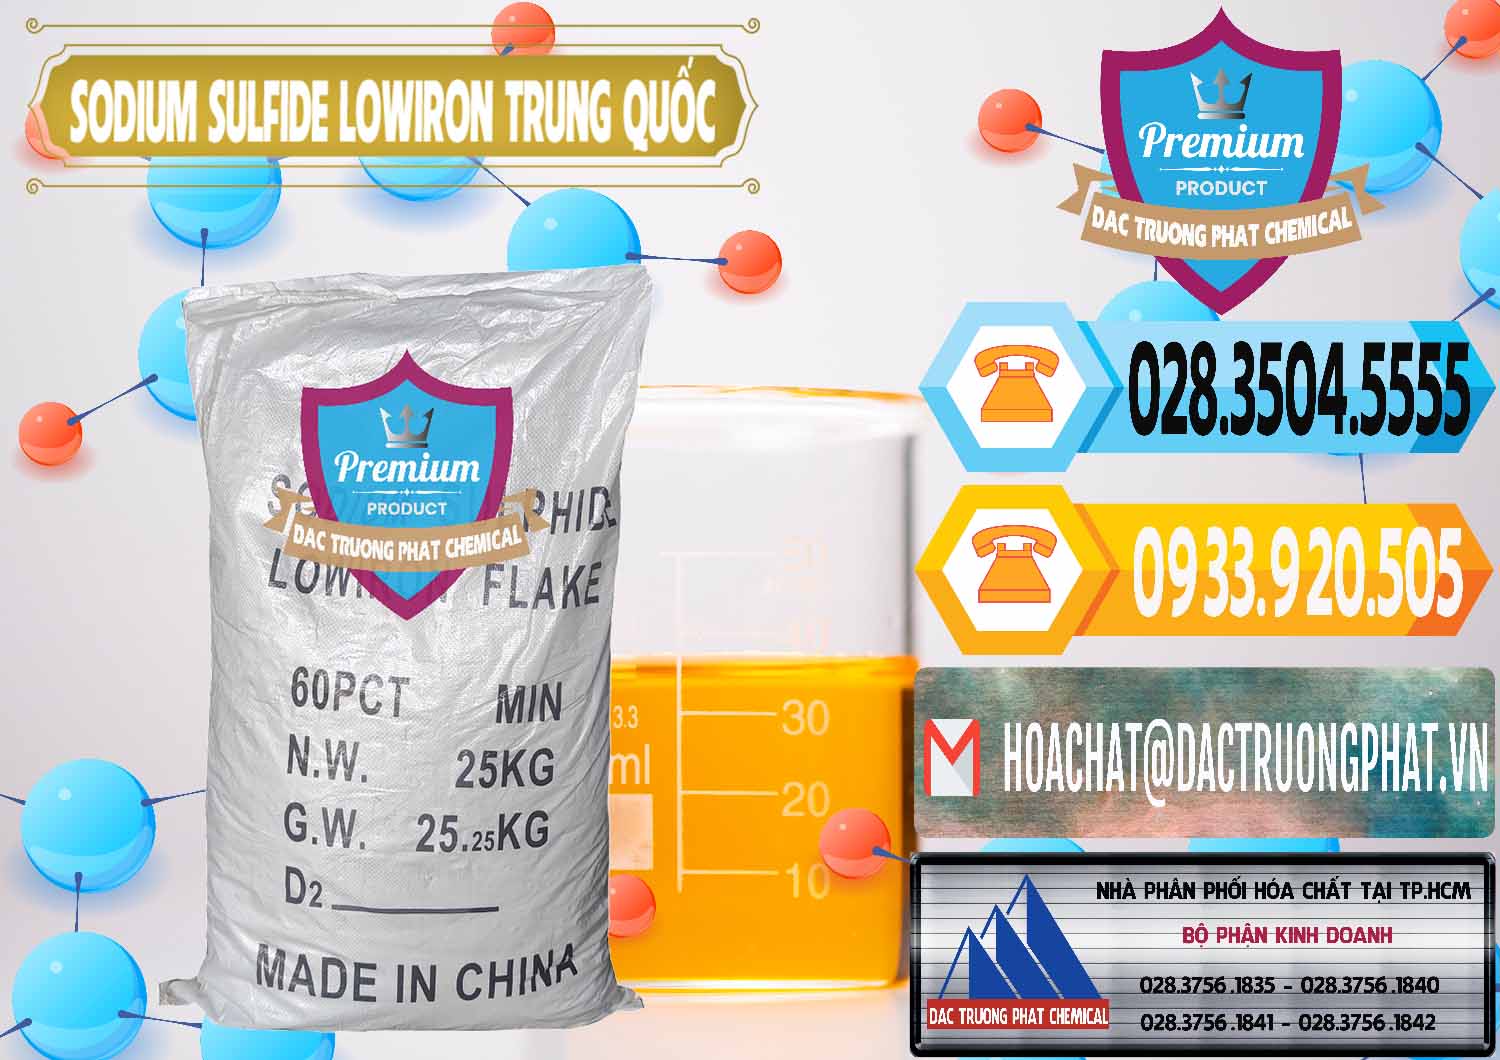 Nơi cung cấp & bán Sodium Sulfide NA2S – Đá Thối Lowiron Trung Quốc China - 0227 - Cung cấp ( nhập khẩu ) hóa chất tại TP.HCM - hoachattayrua.net